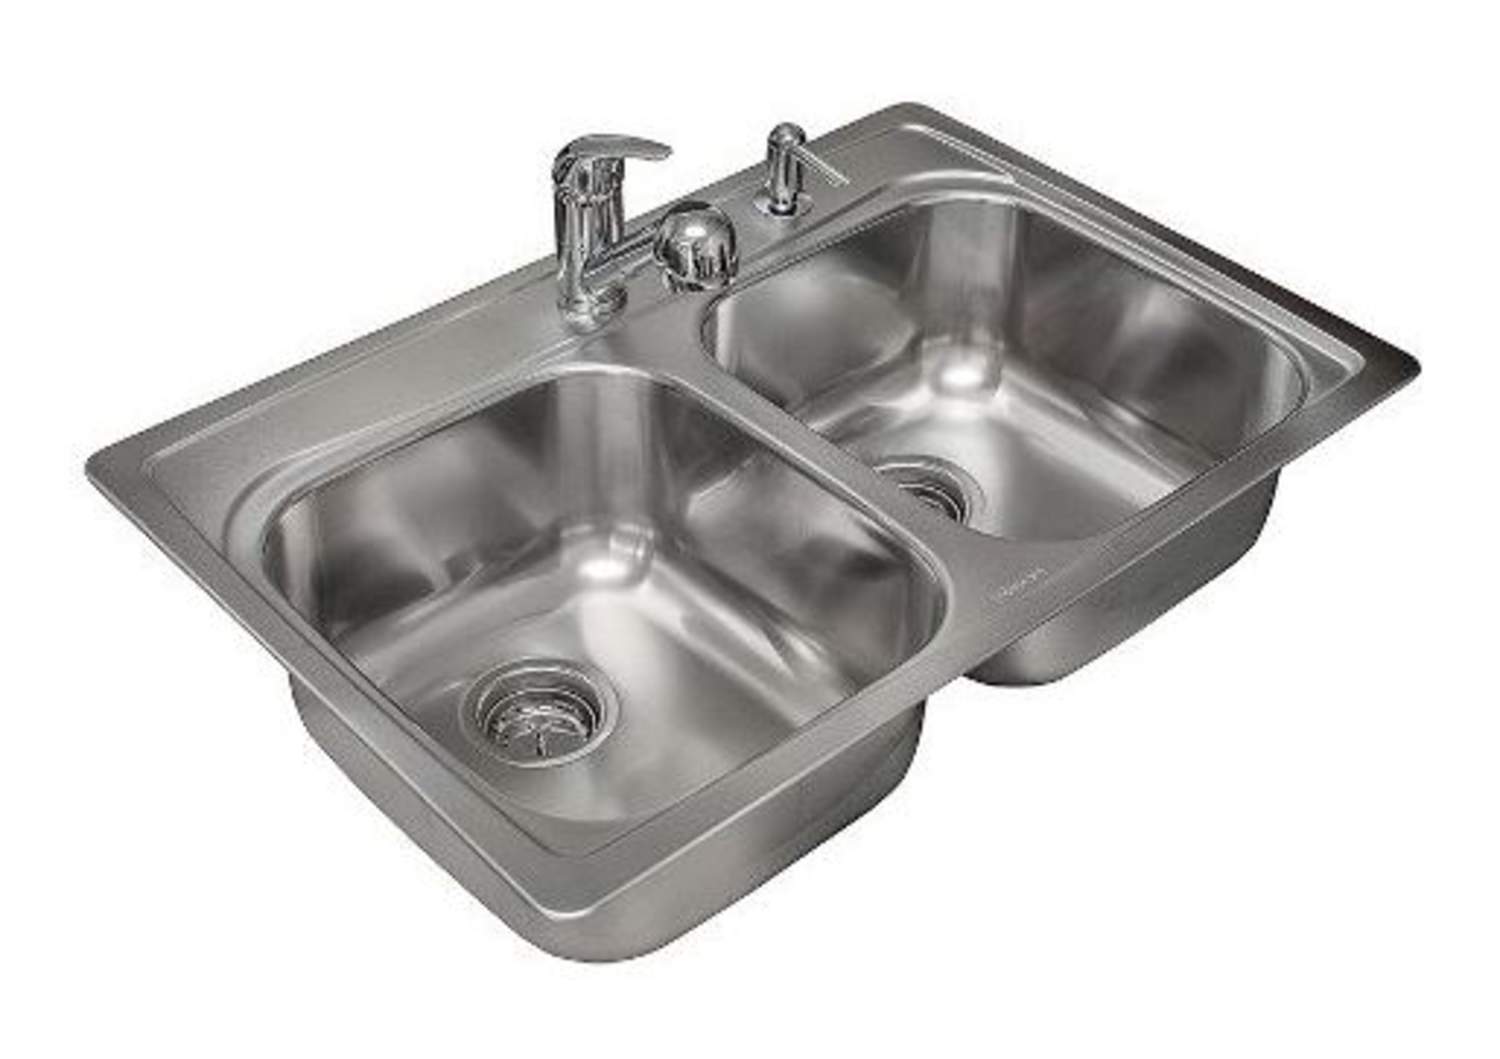 kindred kitchen sink kit